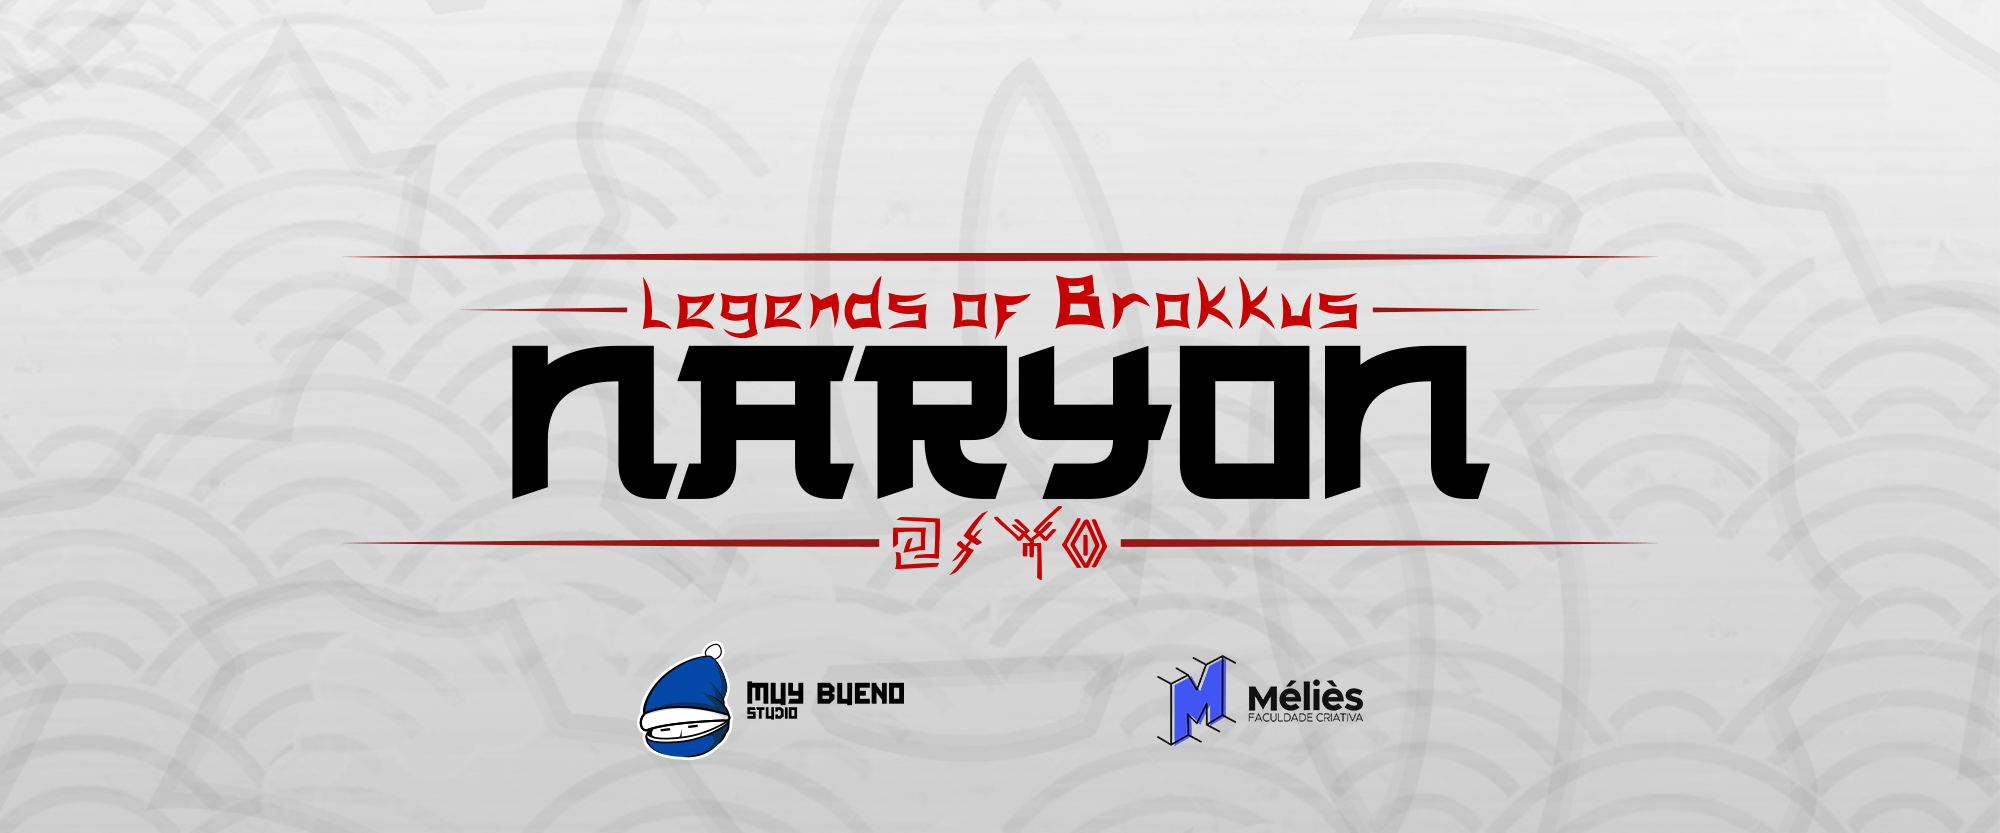 Legend of Brokkus: Naryon